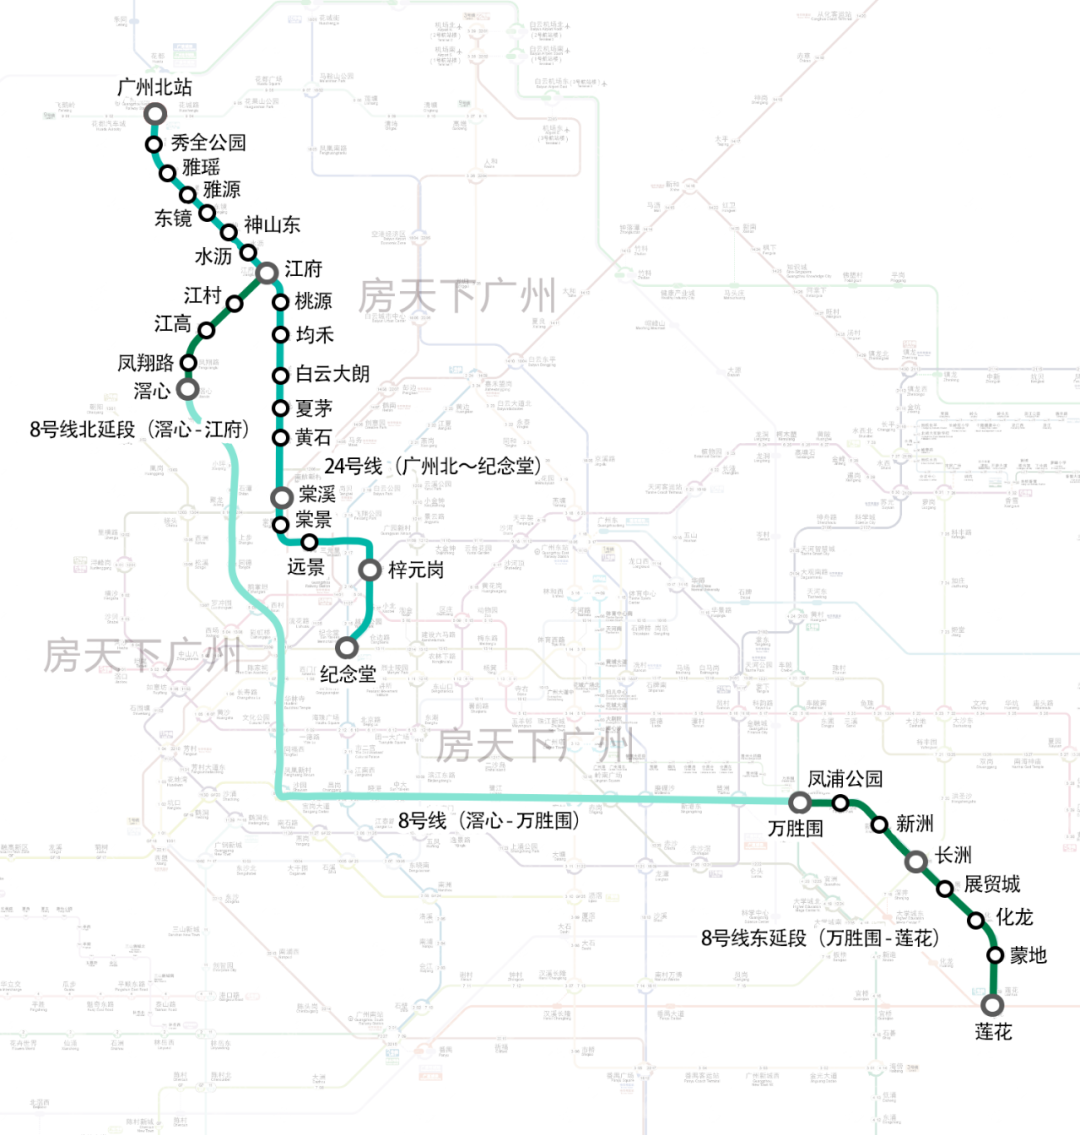 广州市城市轨道交通第三期建设规划调整(线路示意图)